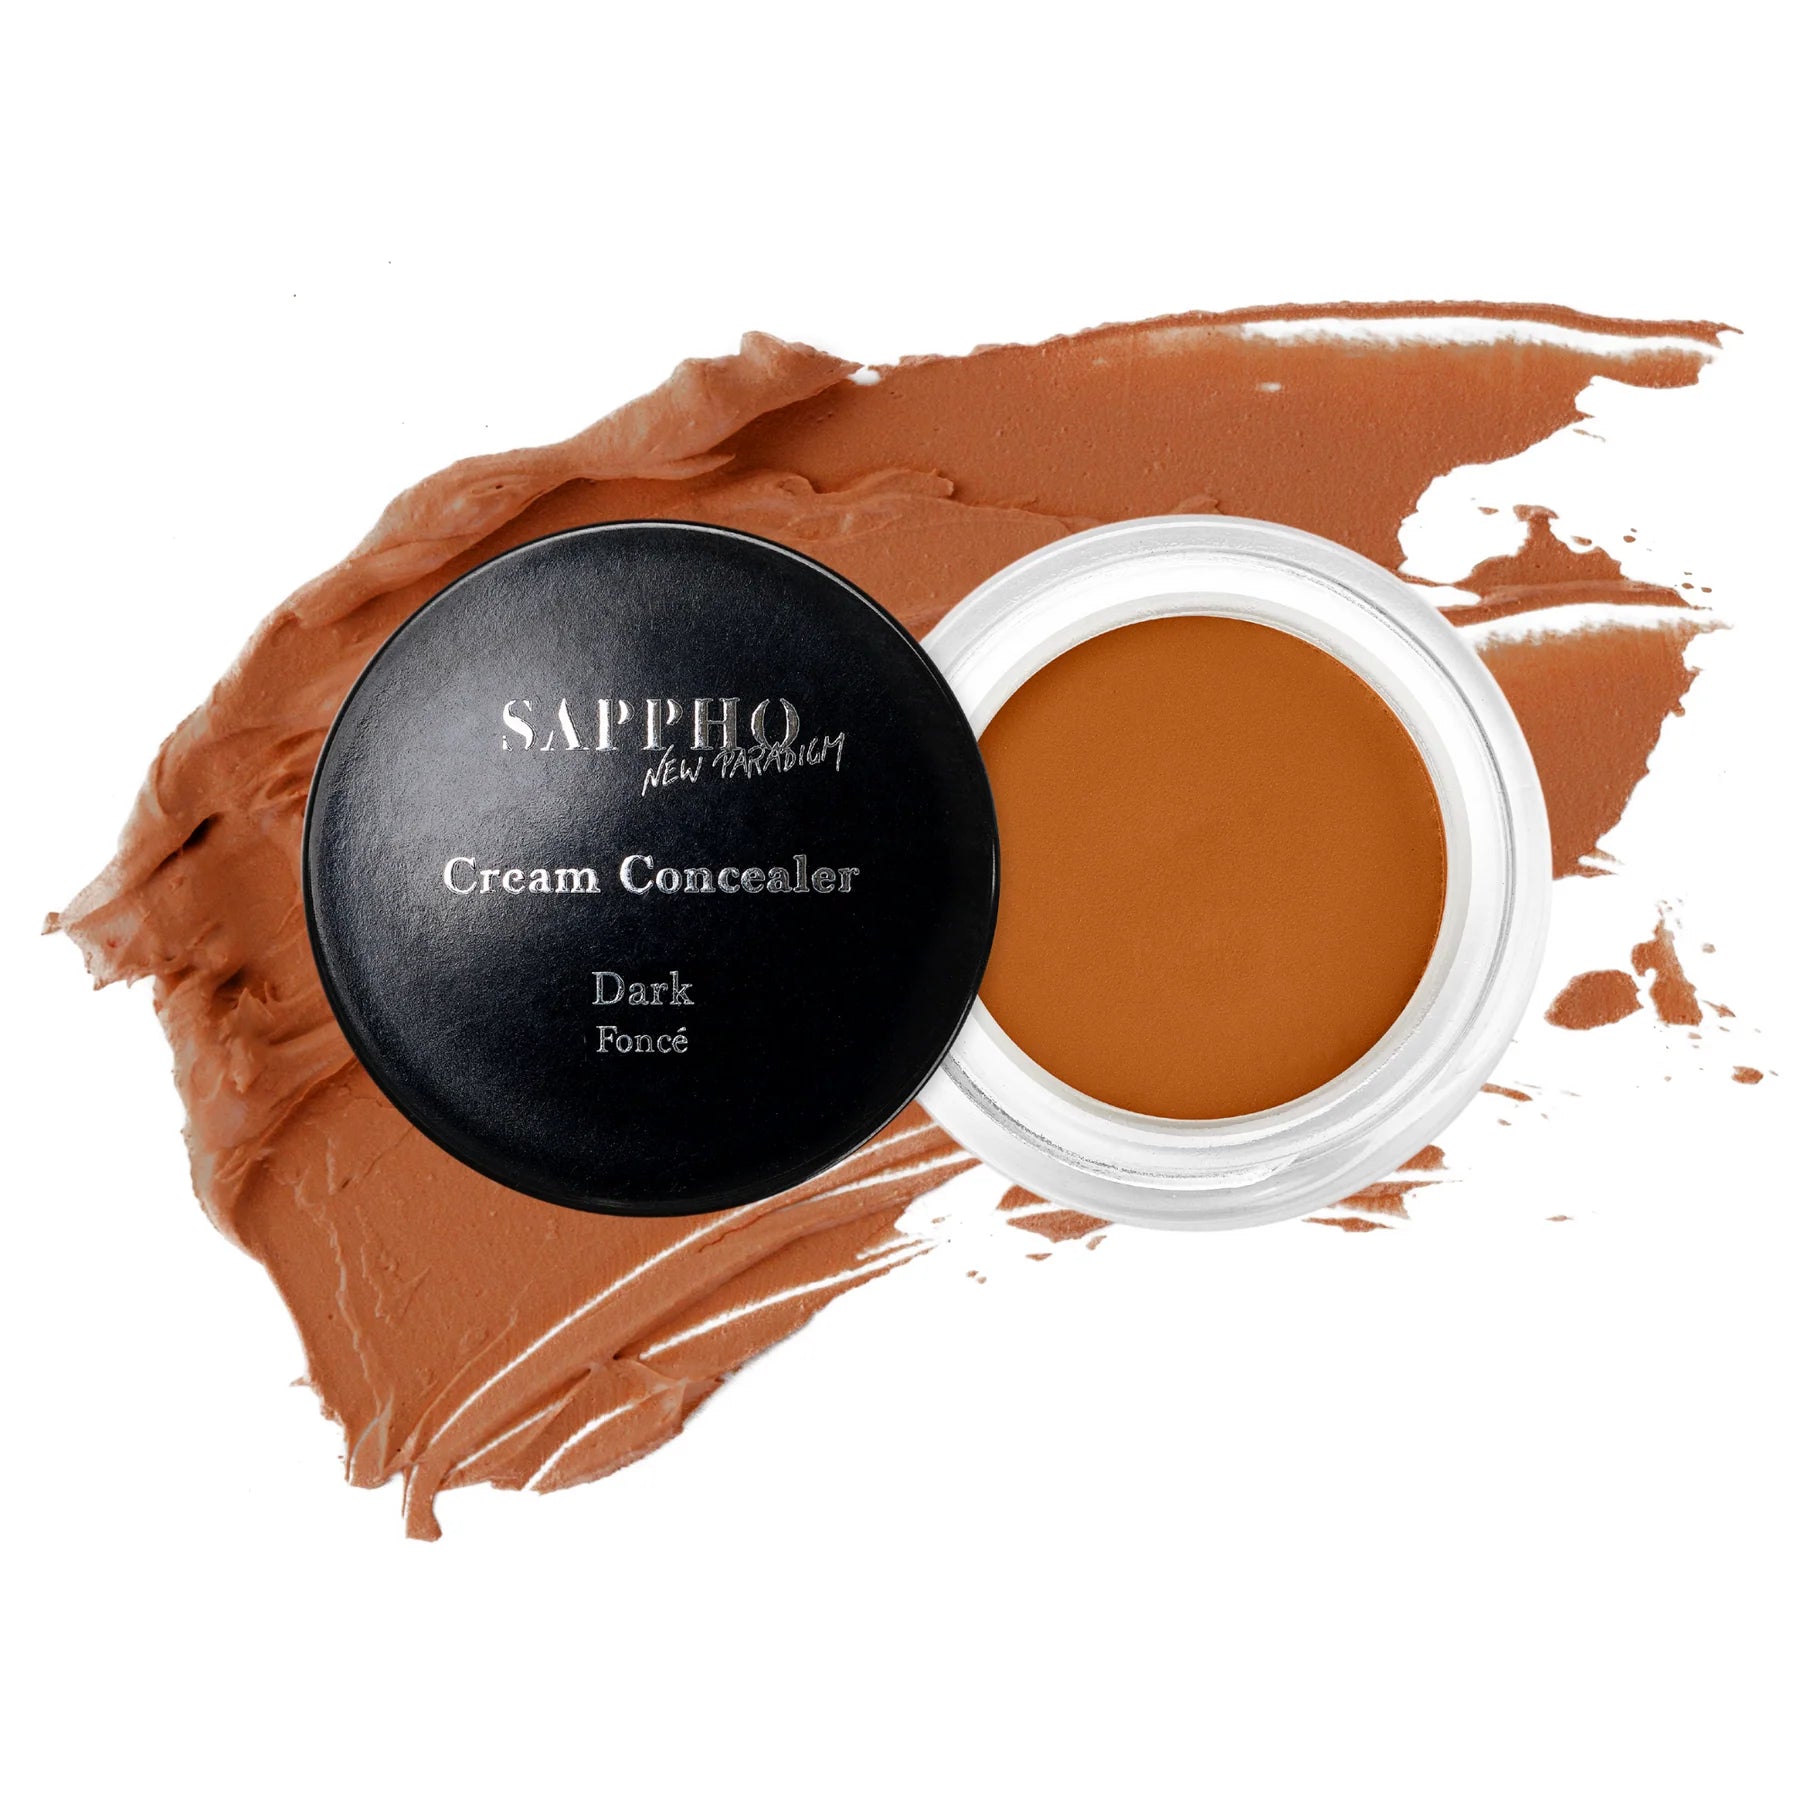 SAPPHO New Paradigm Cream Concealer Dark